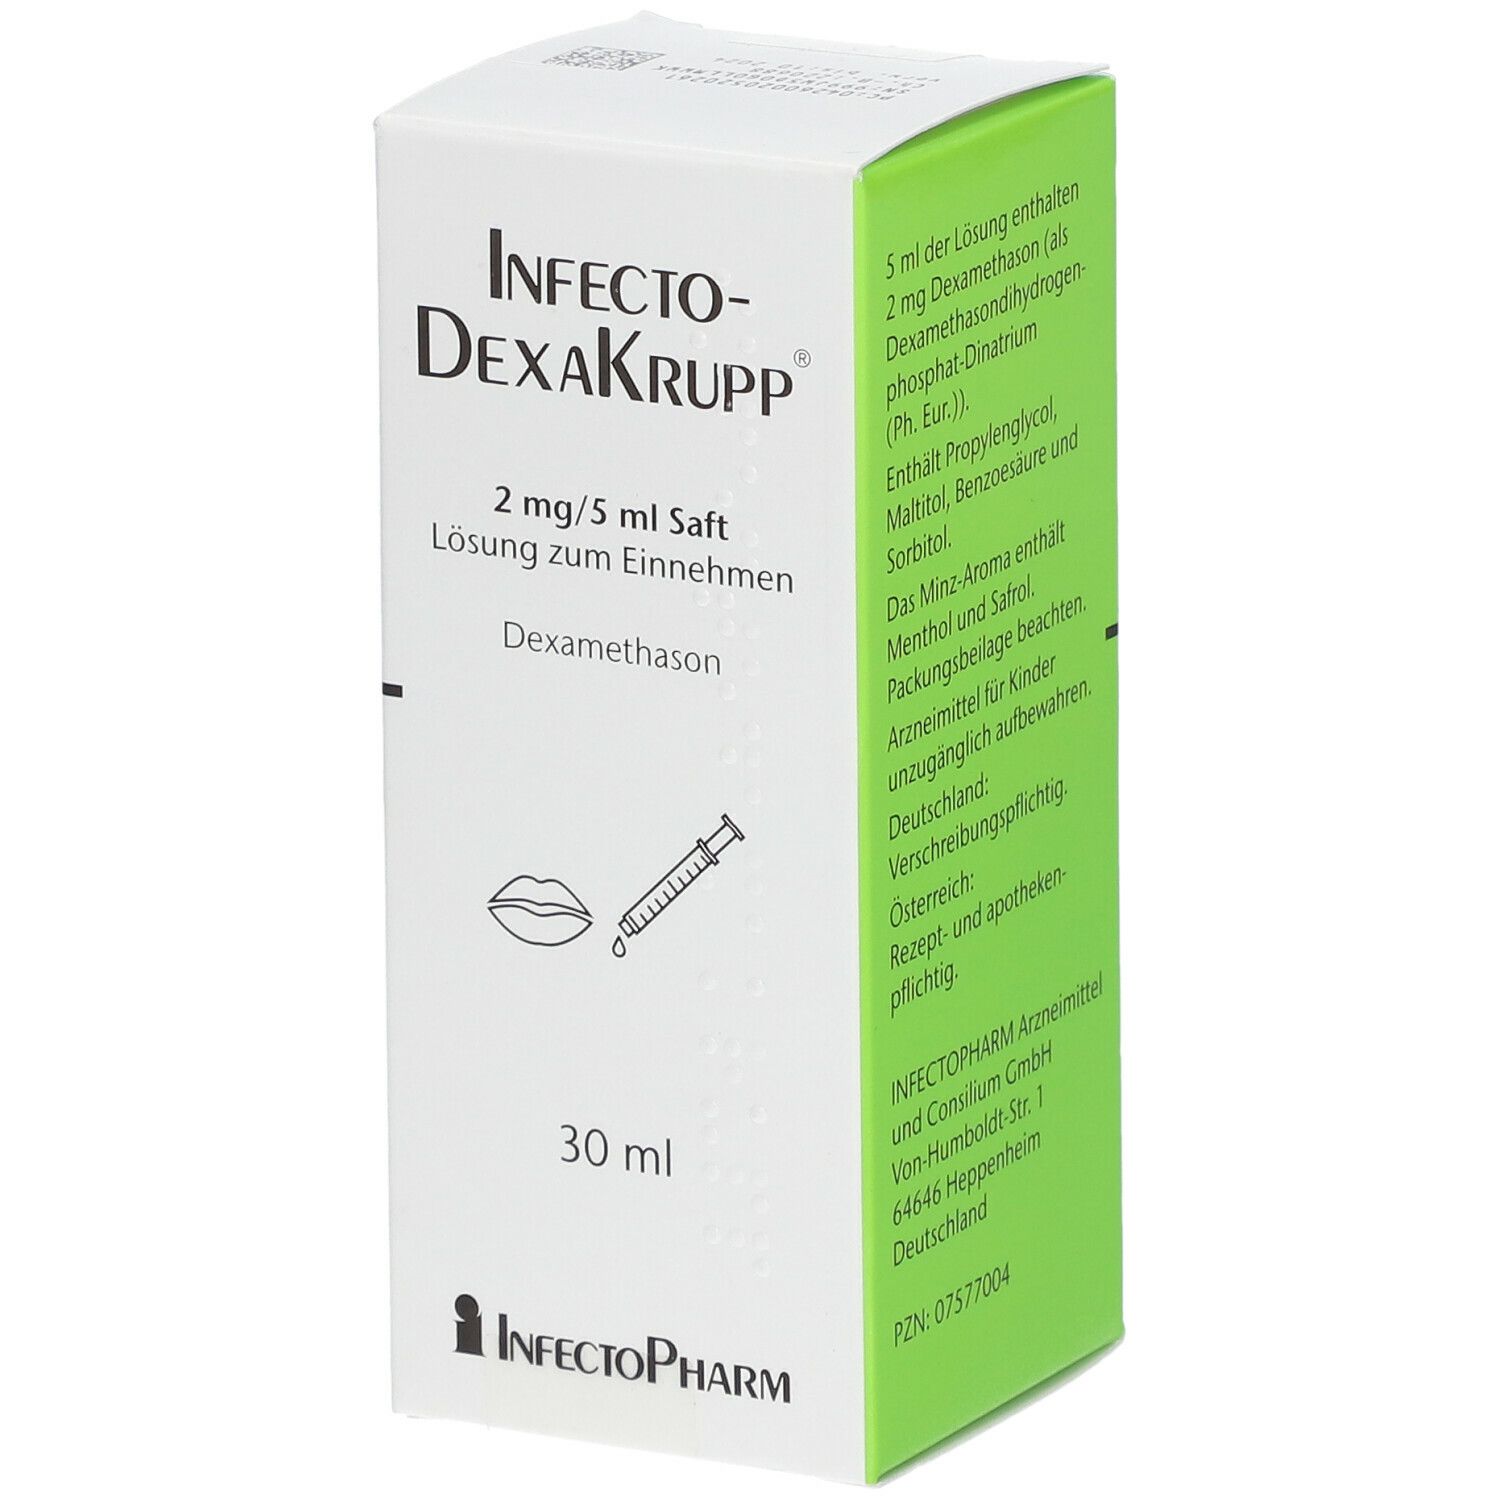 InfectoDexaKrupp® 2 mg/5 ml Saft